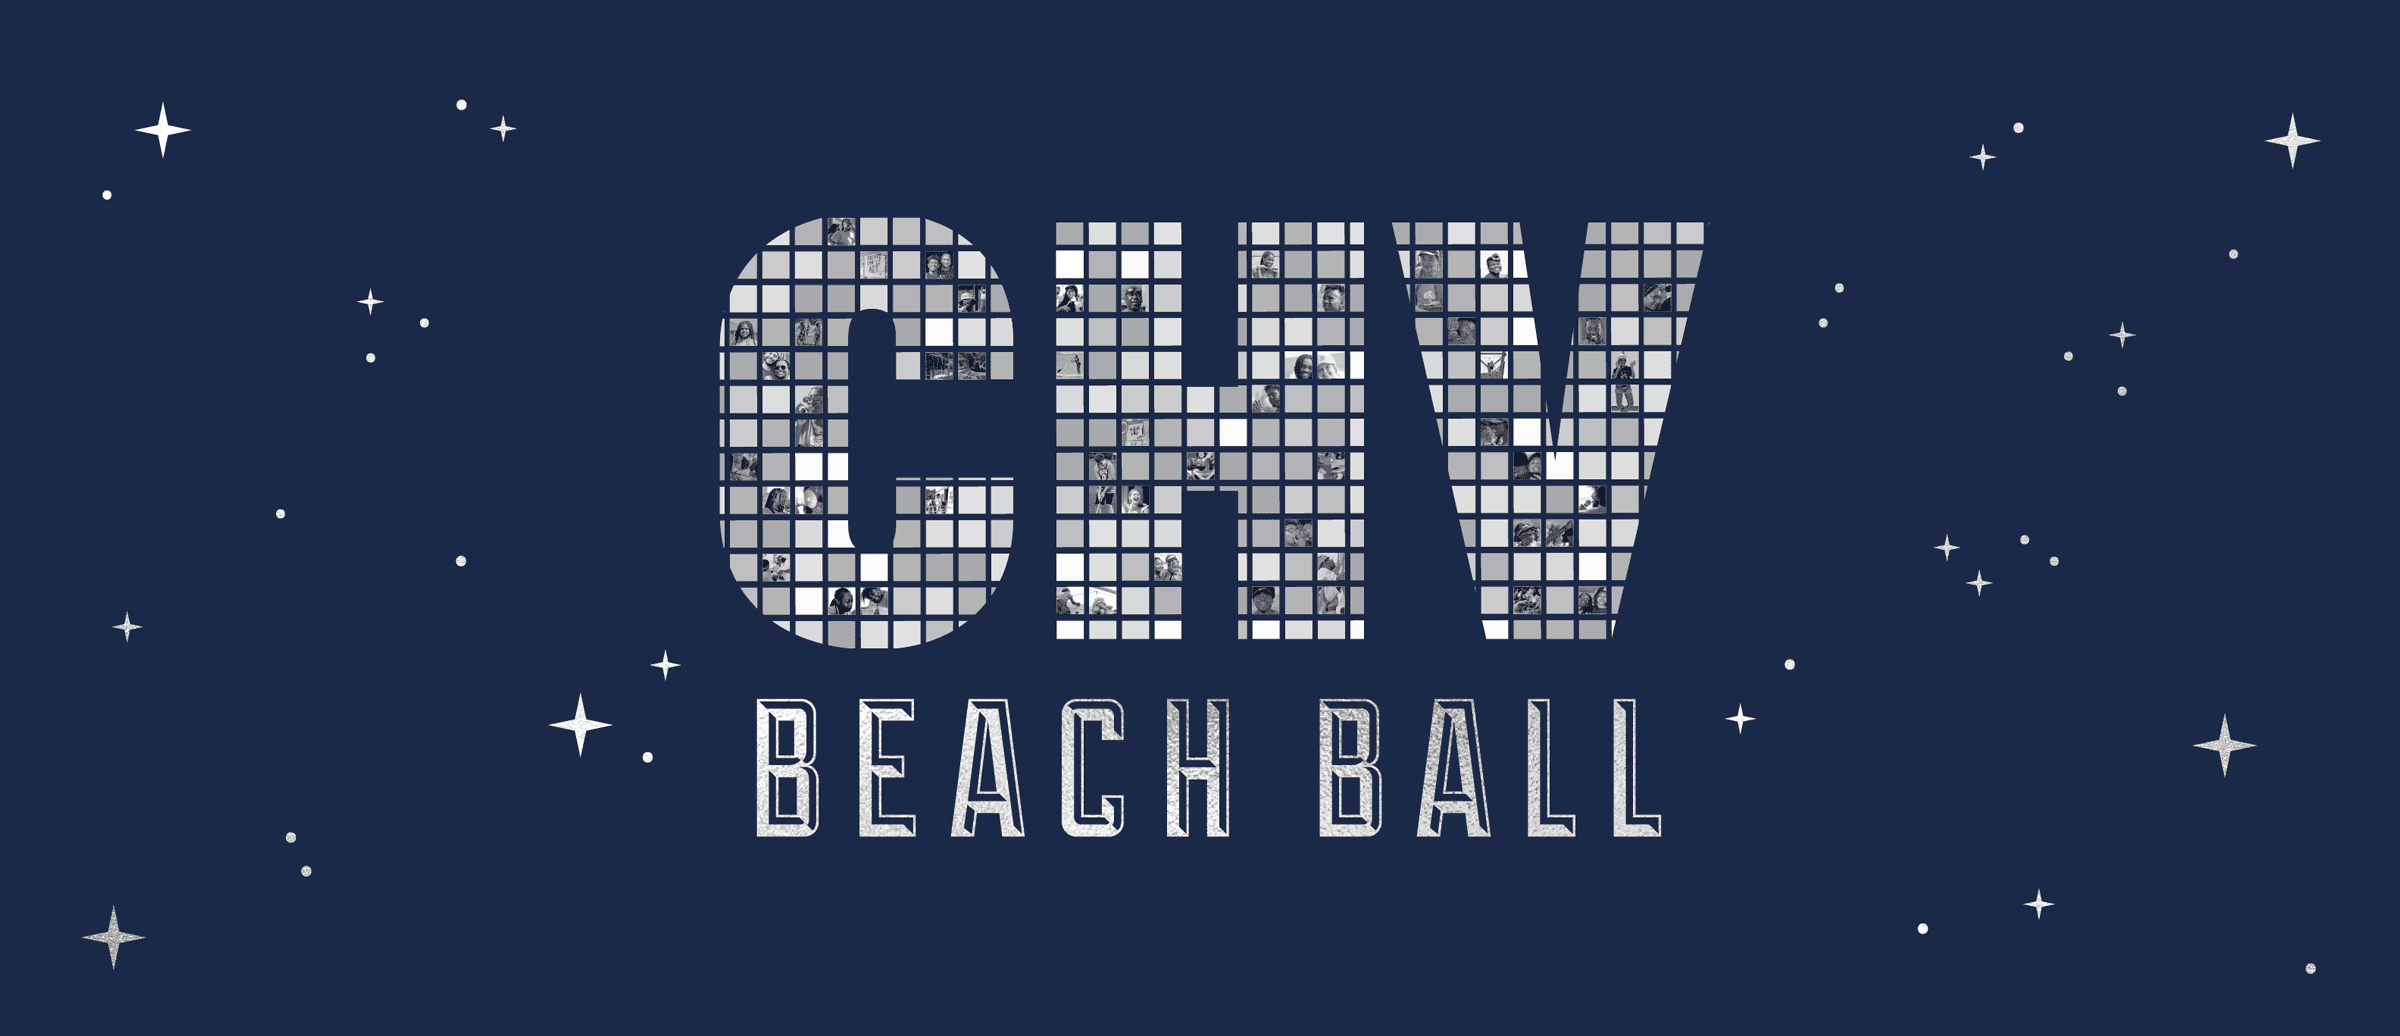 CHV BEACH BALL 